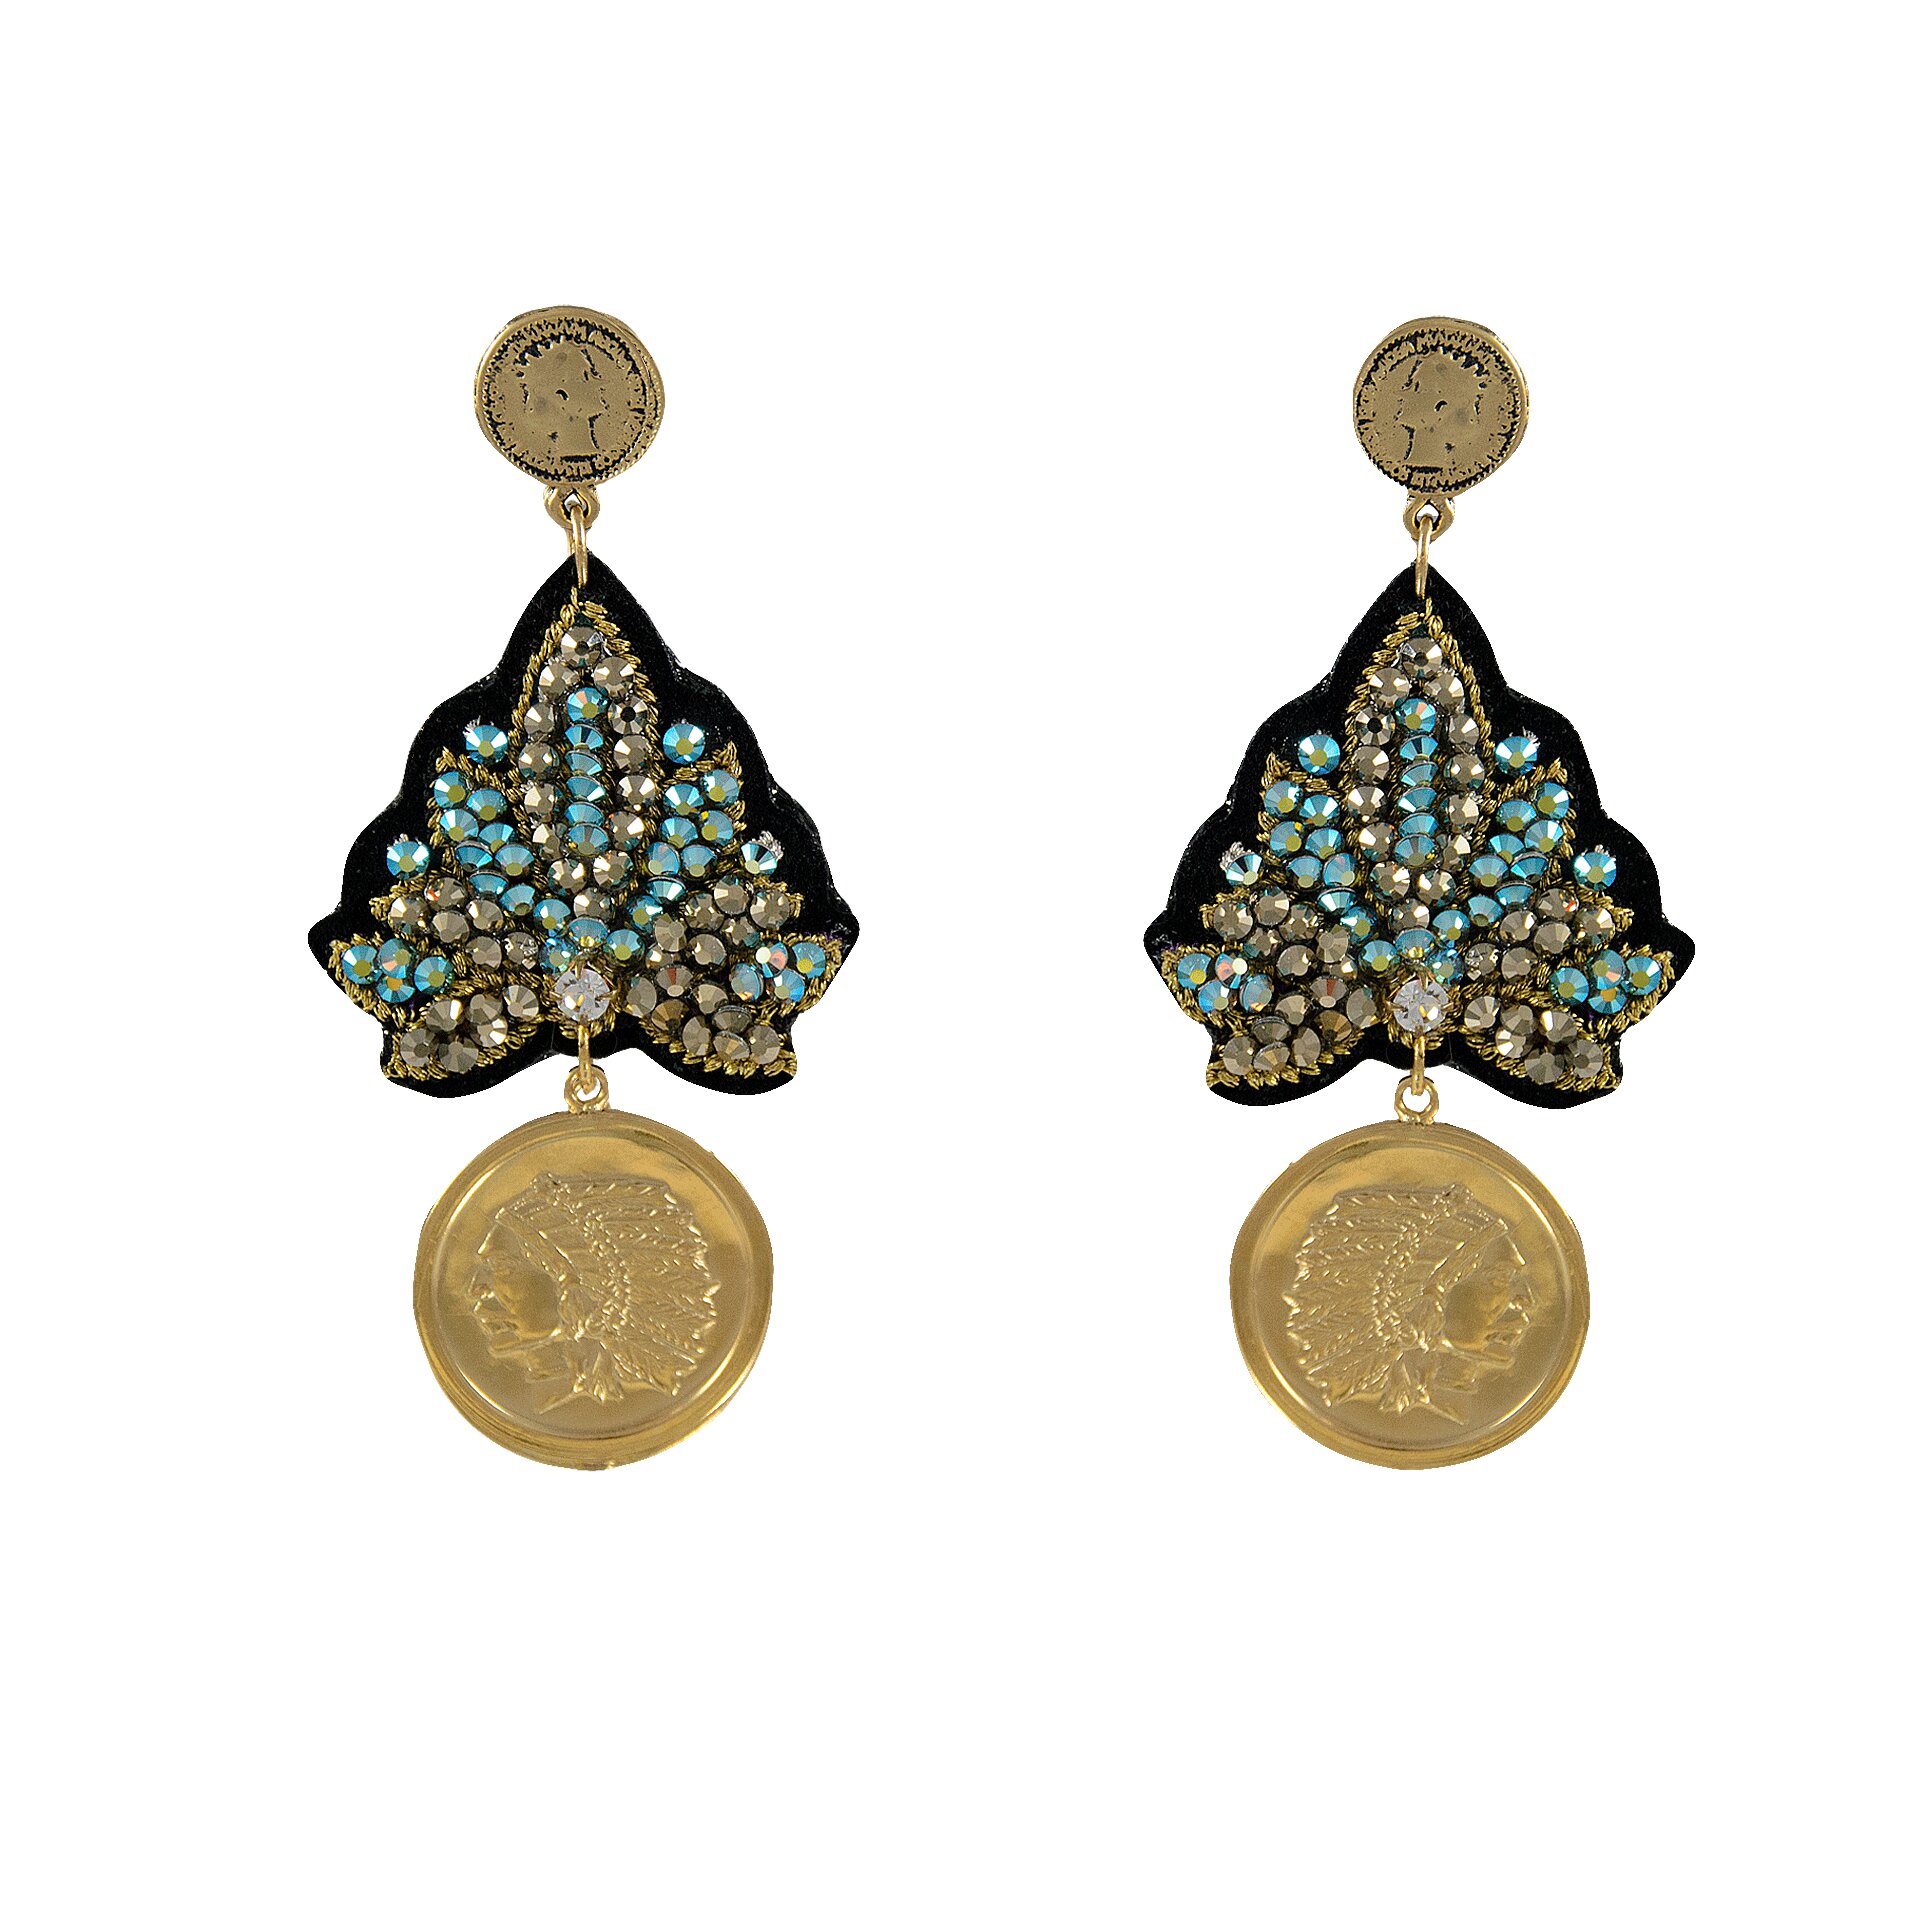 LINDA'S DREAM indian blauwe oorbellen met gouden elementen